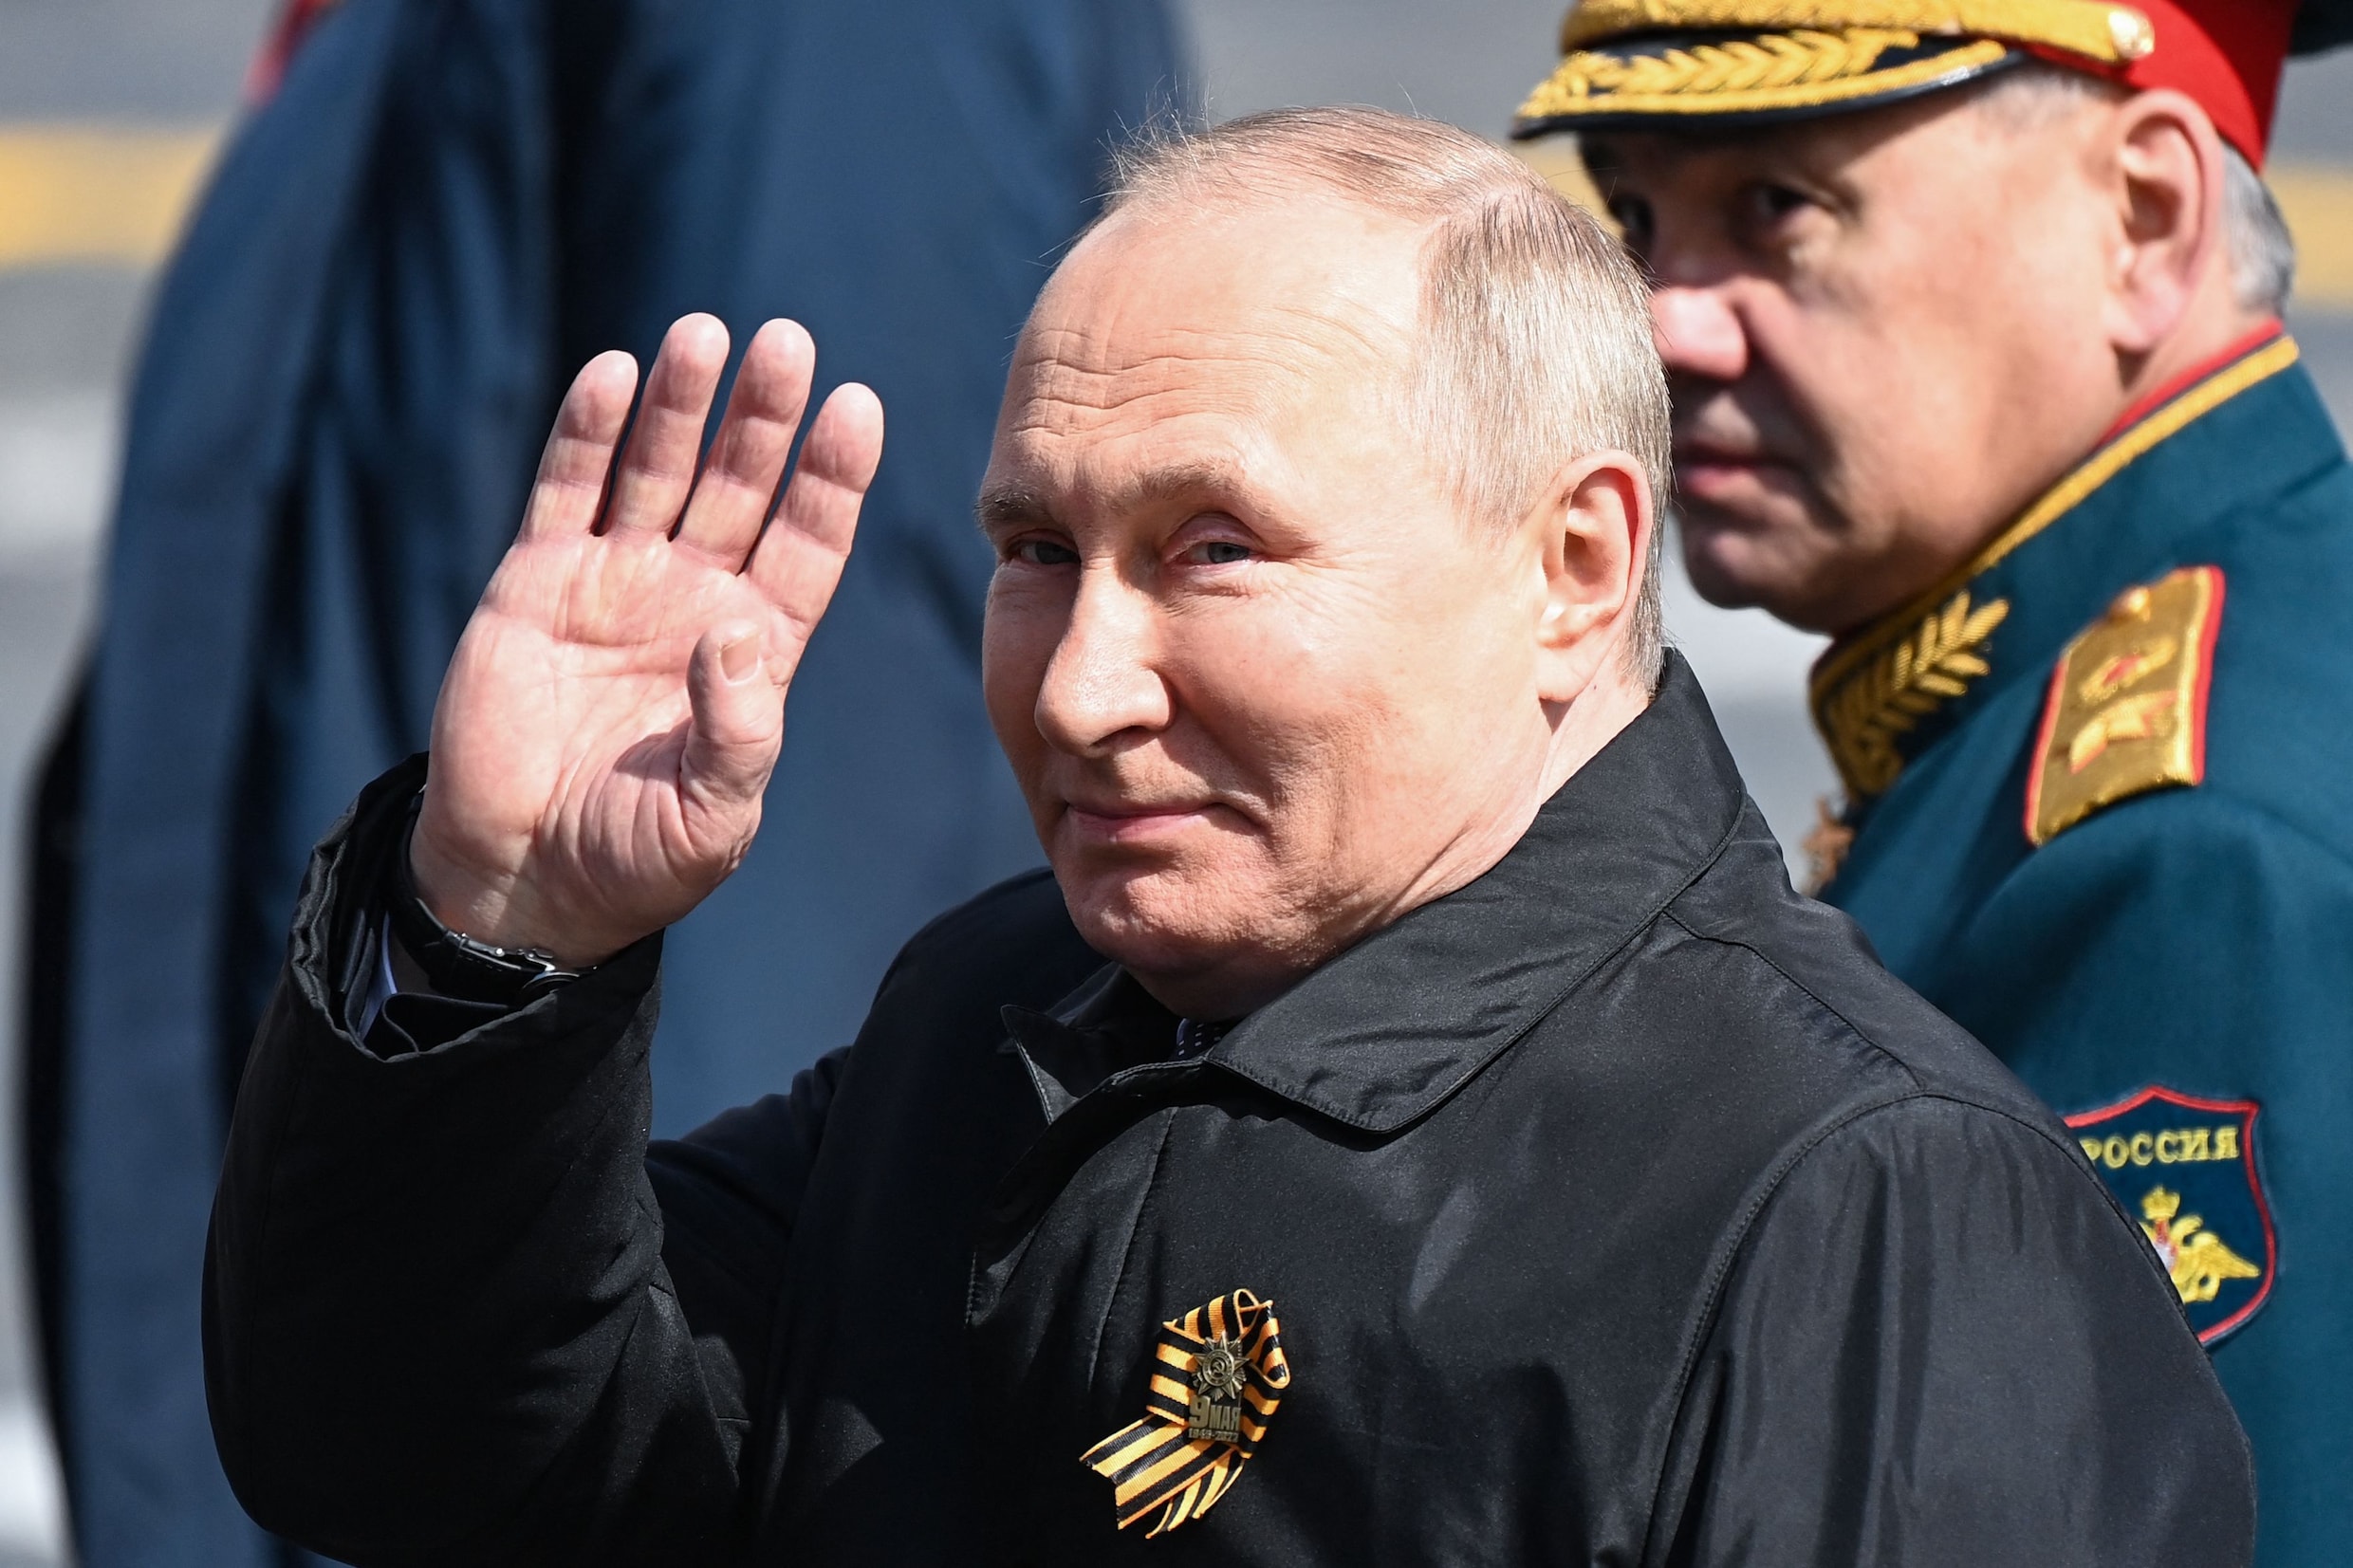 Kunnen tot 1 miljoen Russen opgeroepen worden? Geheime paragraaf in mobilisatiebesluit Poetin roept vragen op